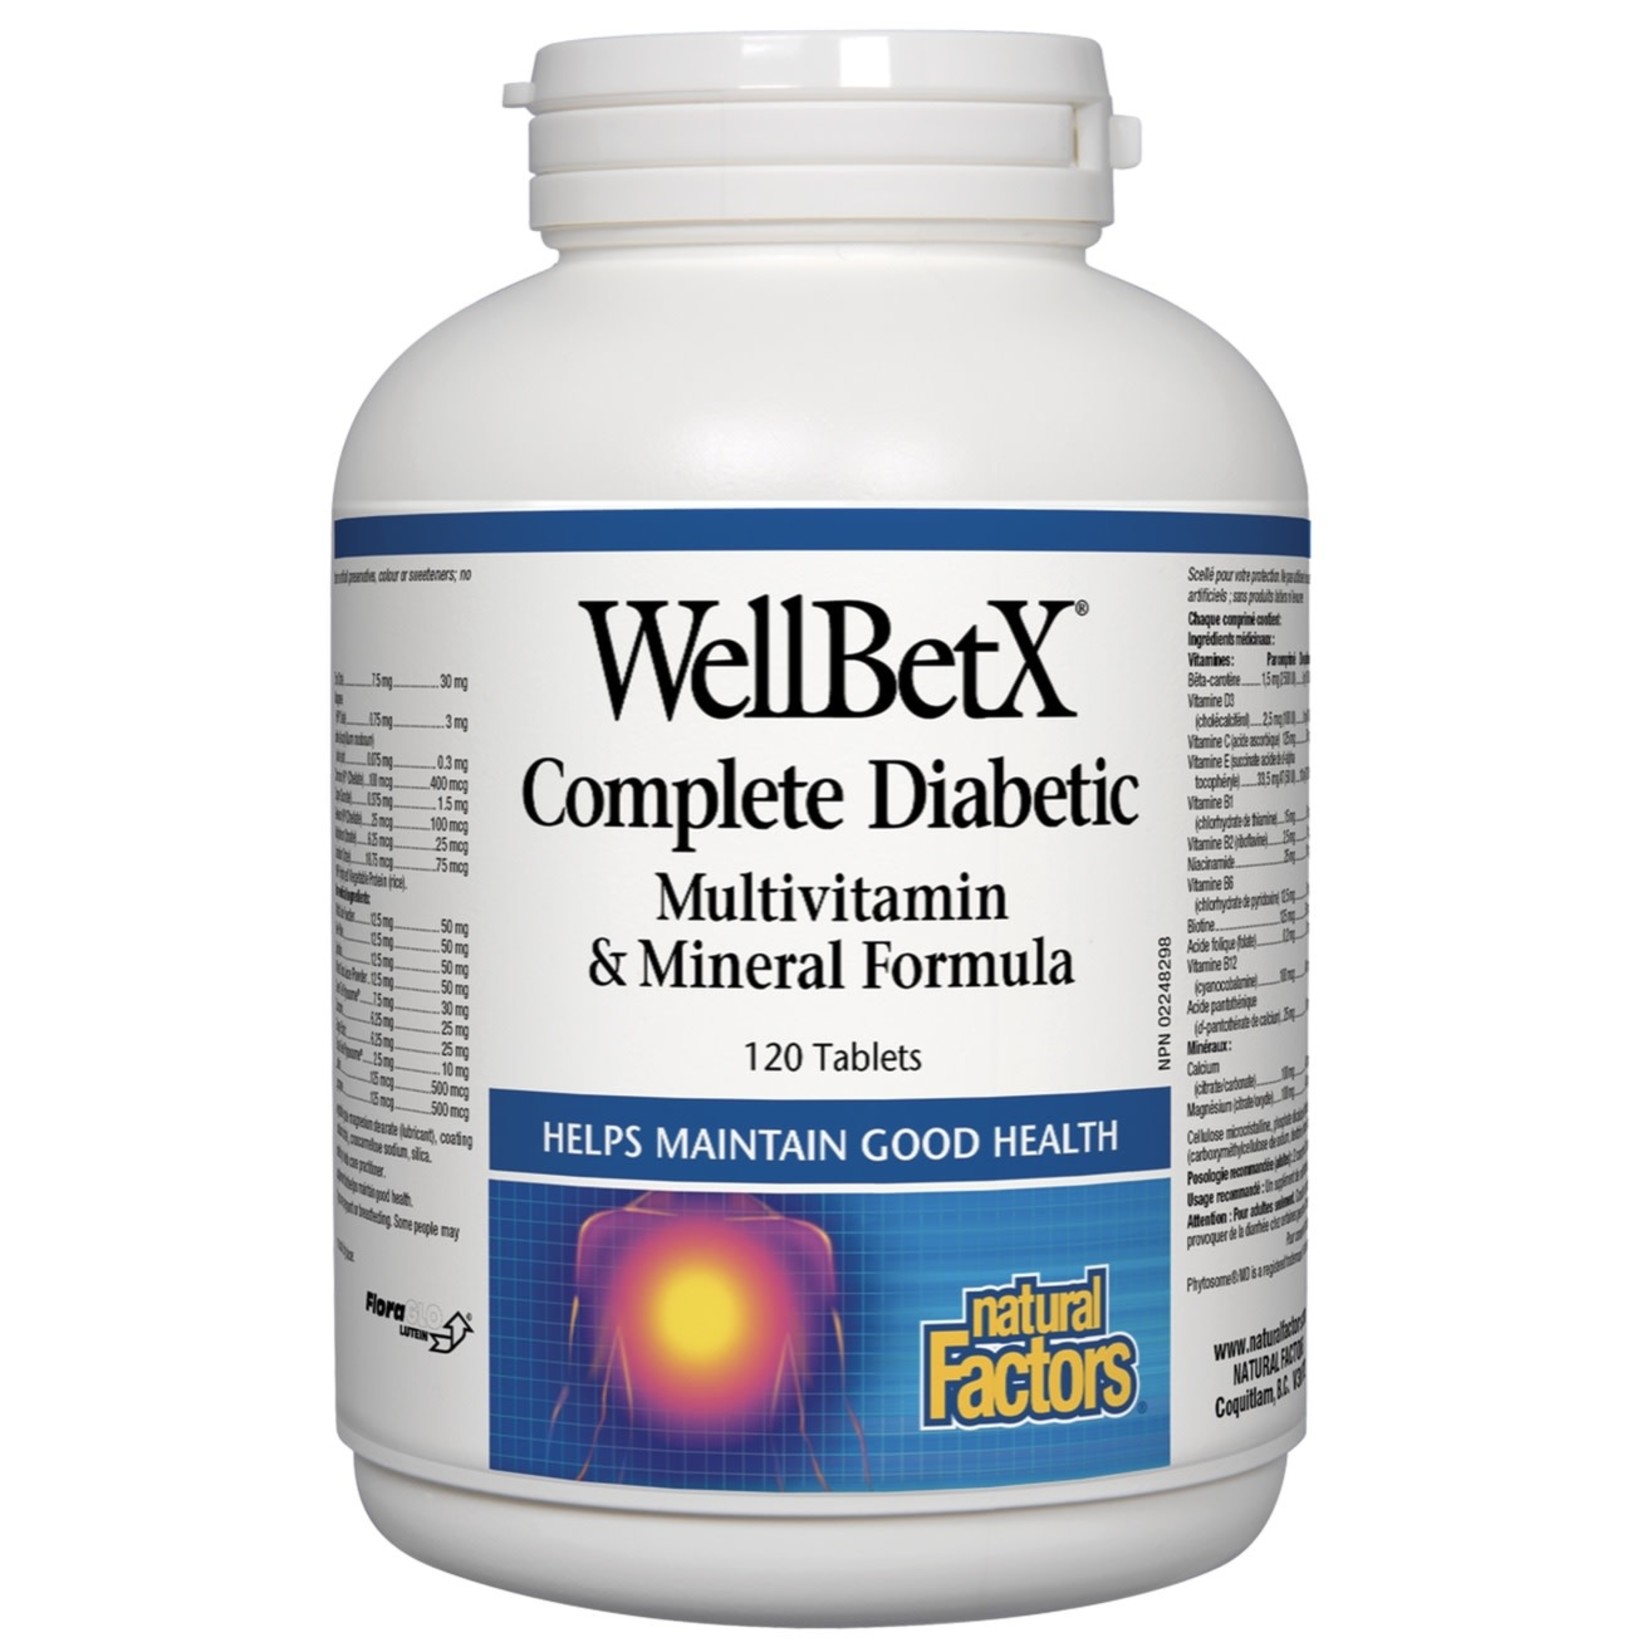 Natural Factors Natural Factors Complete Diabetic Multivitamin & Mineral Formula 120 tabs